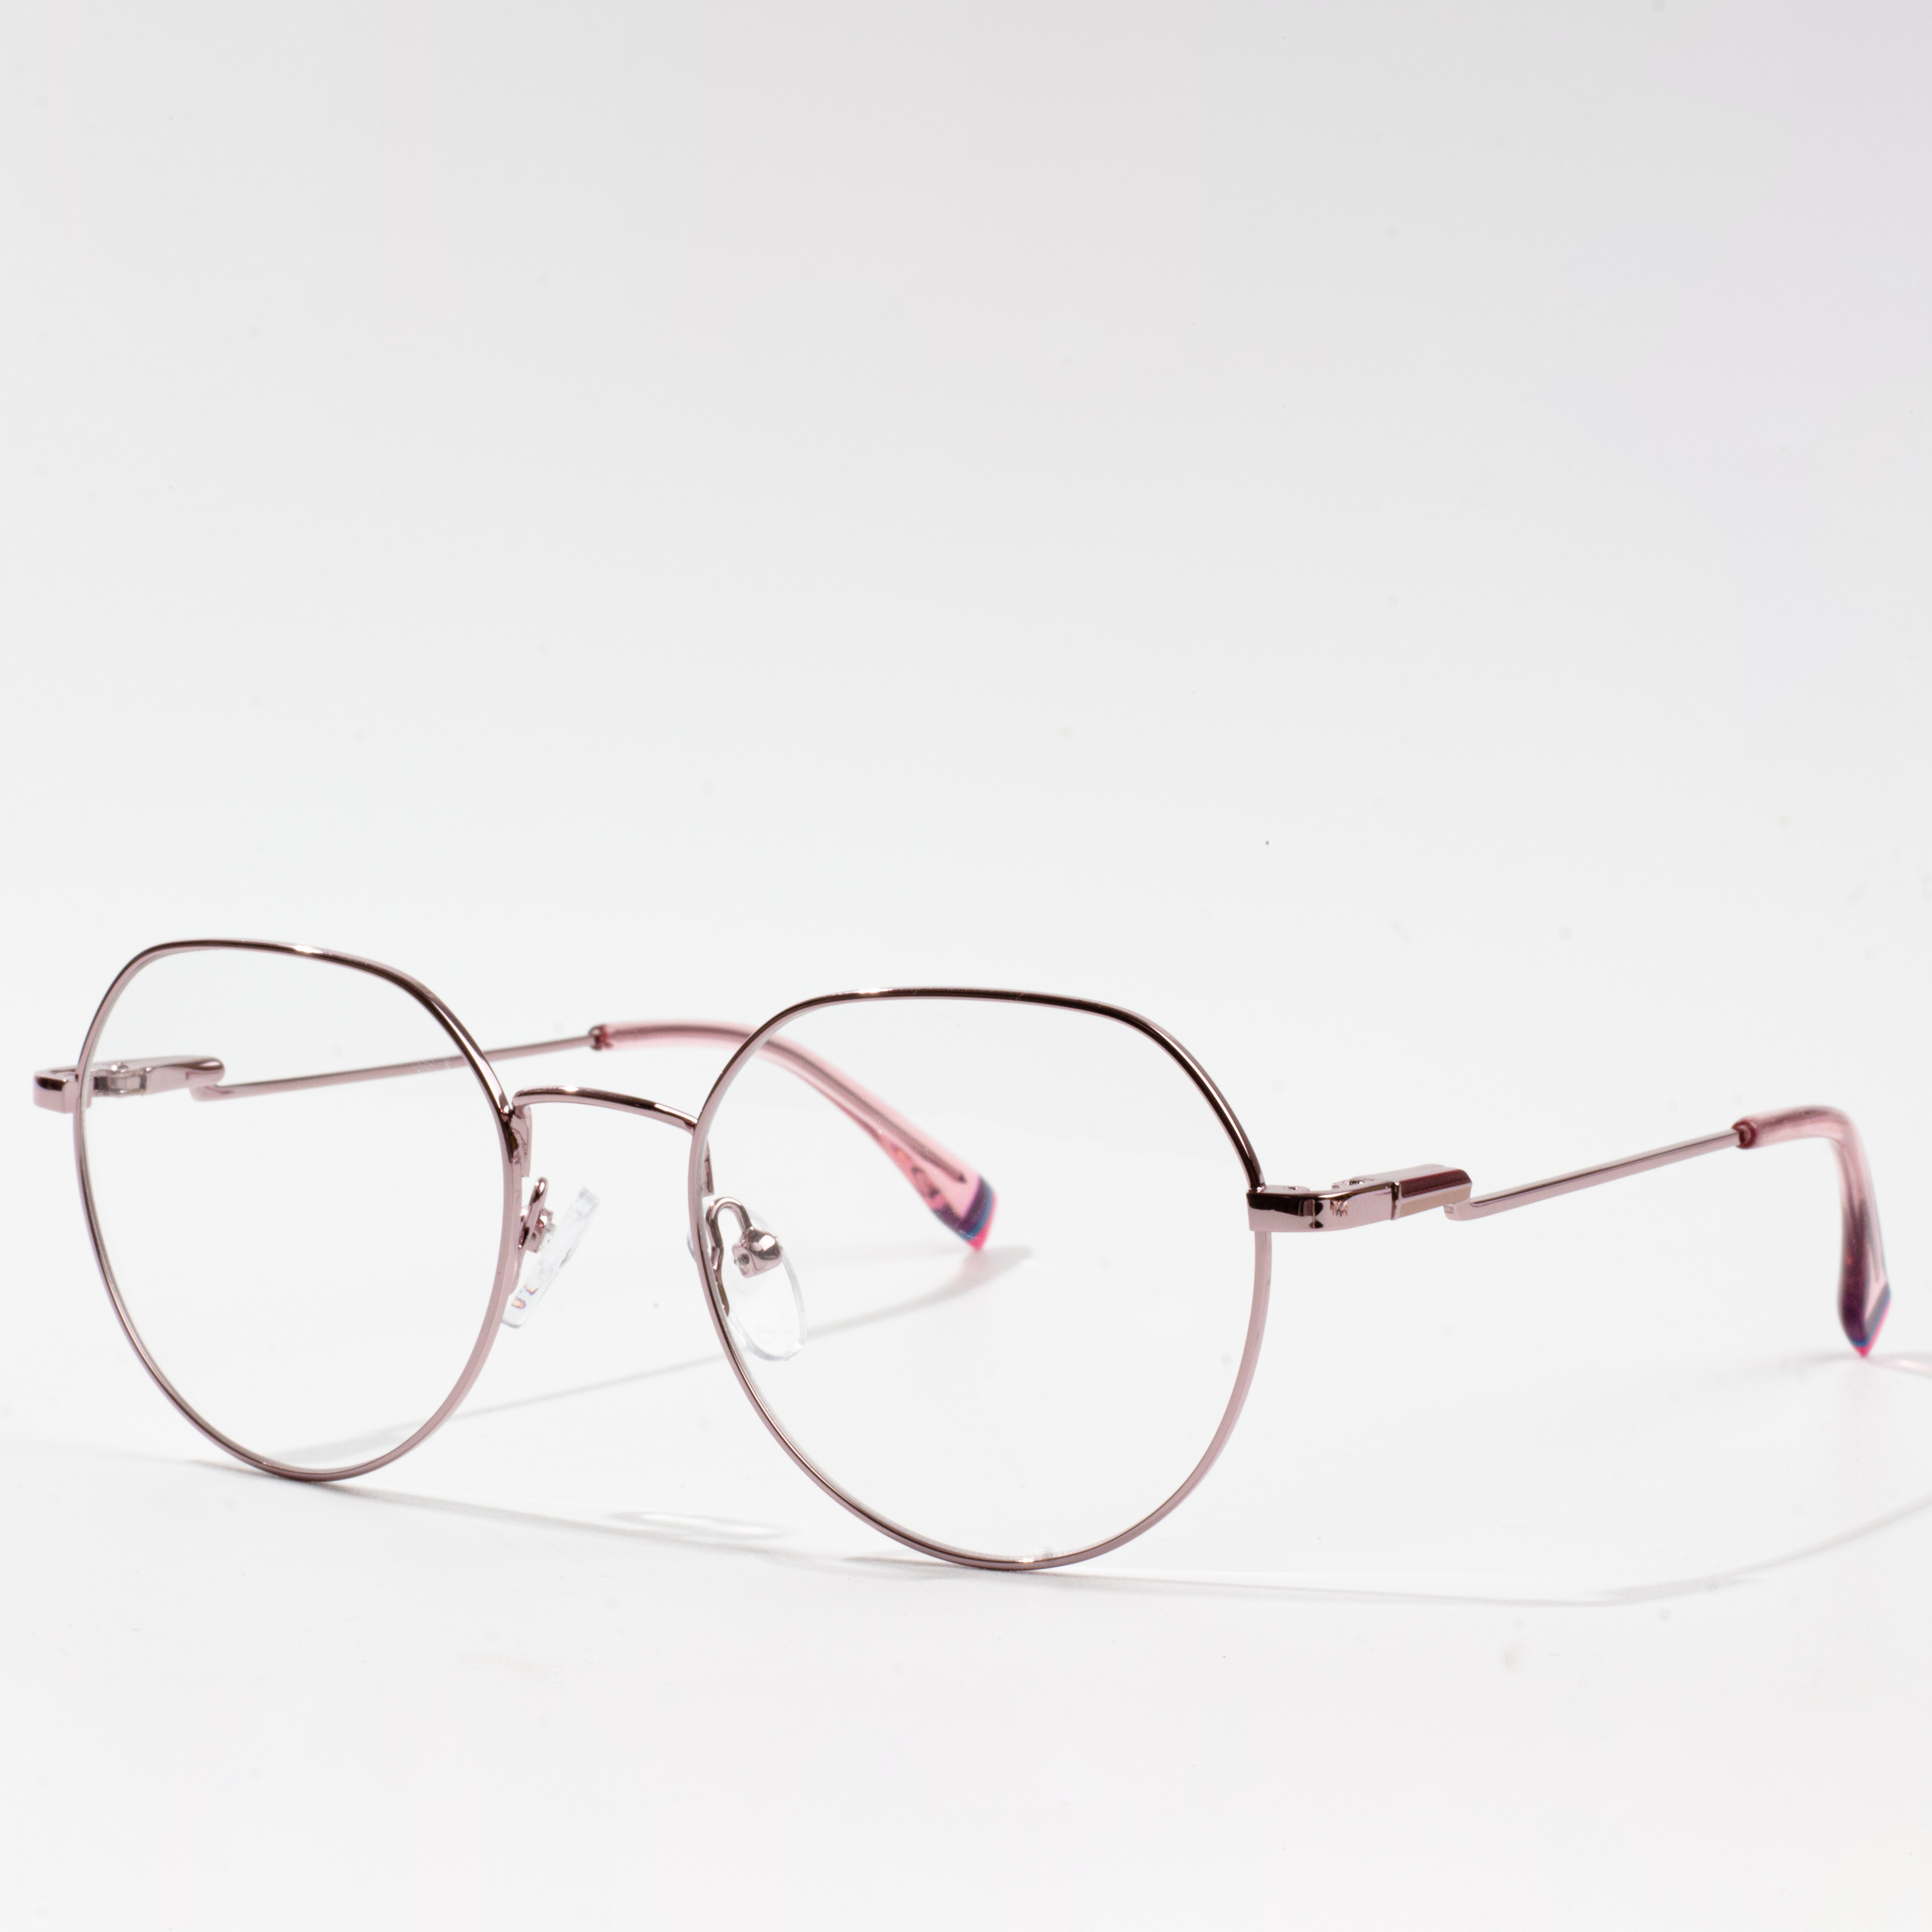 kornizat më të njohura të syzeve